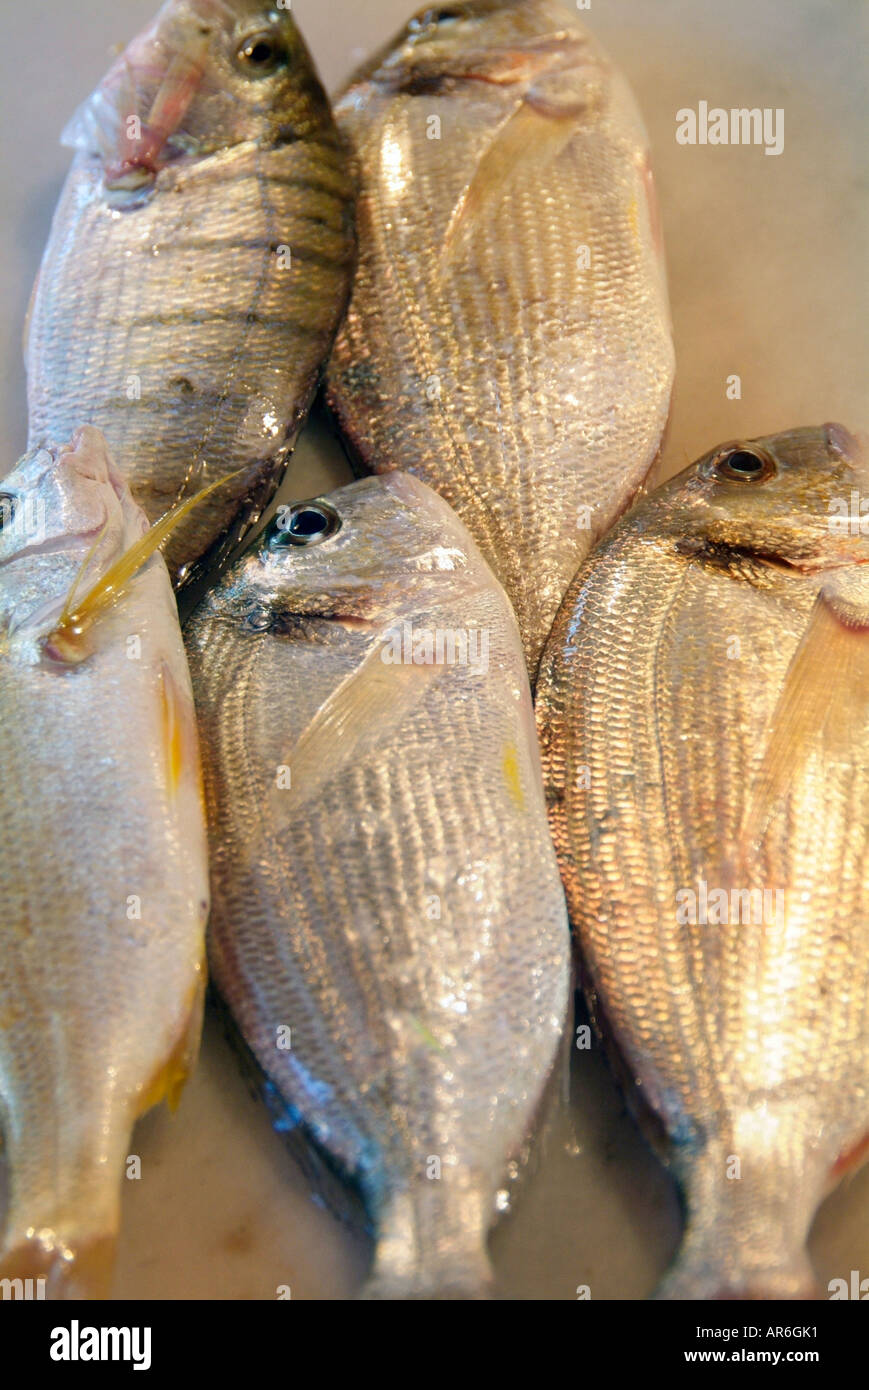 Fisch Fischhändler Platte Marmor kalten nassen tot gefangen marine ganz faul Fang net Saison Stück Outdoorshop Markt Stall Teil Stockfoto